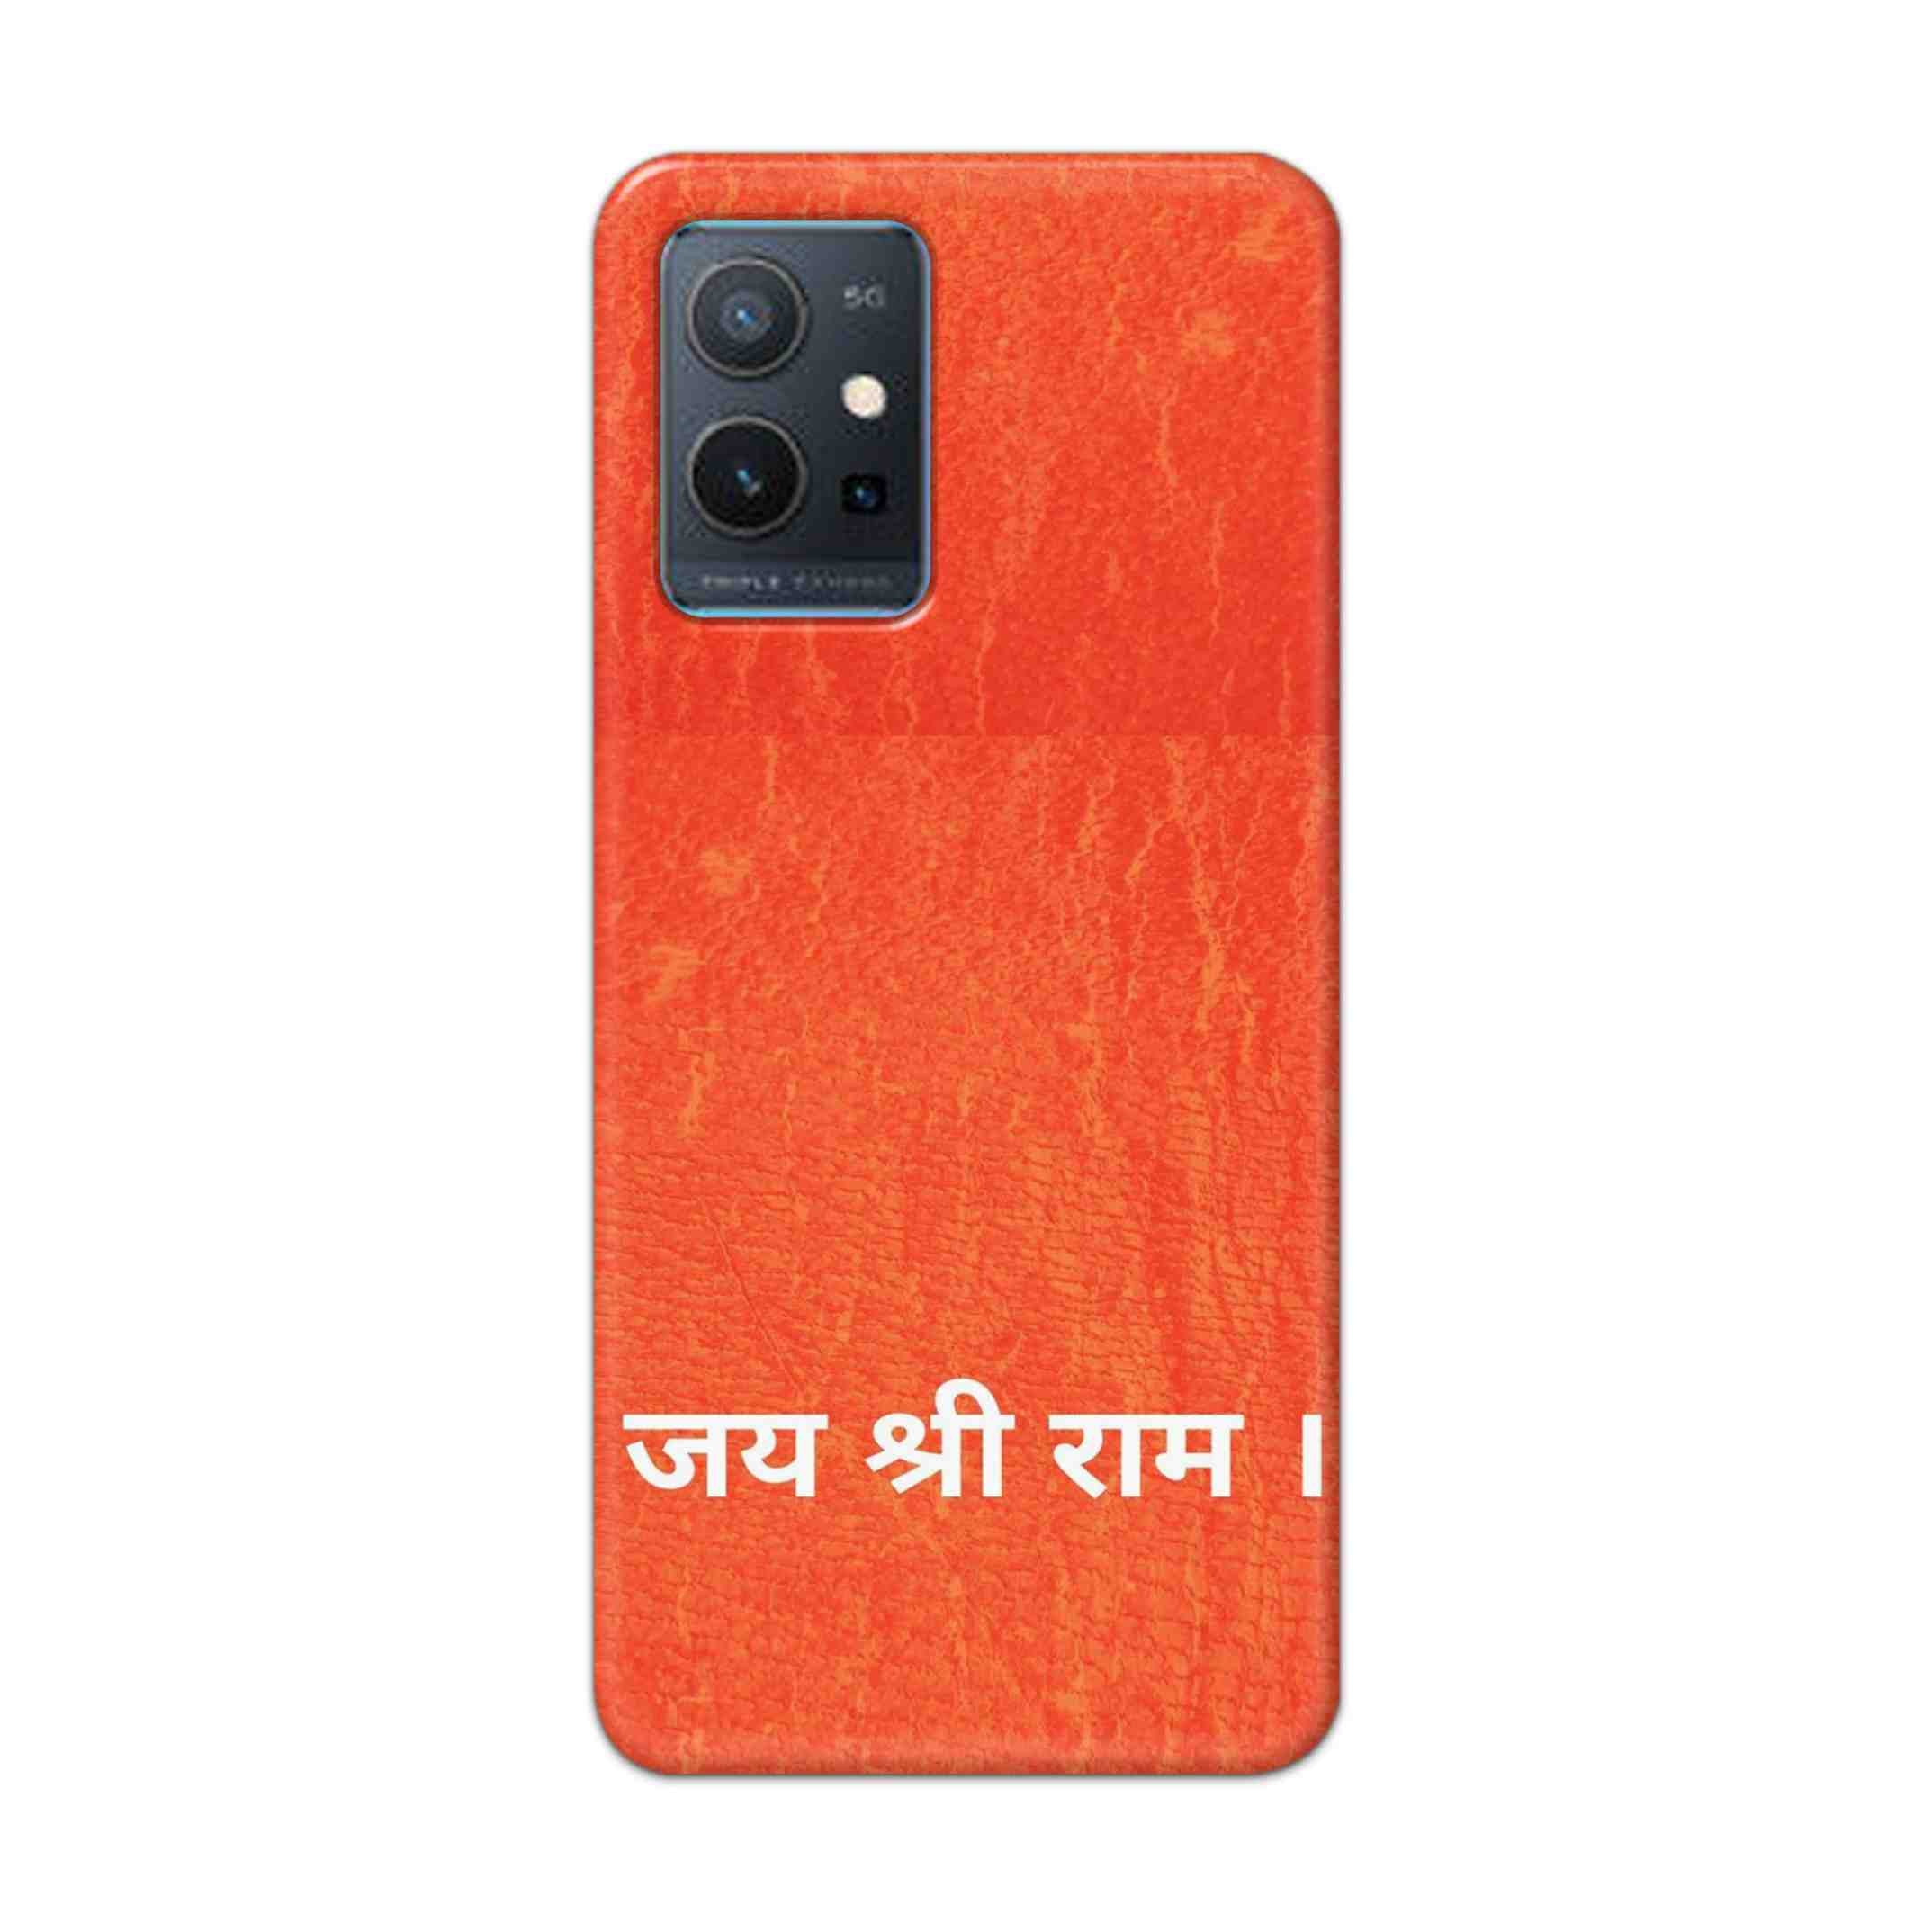 Buy Jai Shree Ram Hard Back Mobile Phone Case Cover For Vivo Y75 5G Online